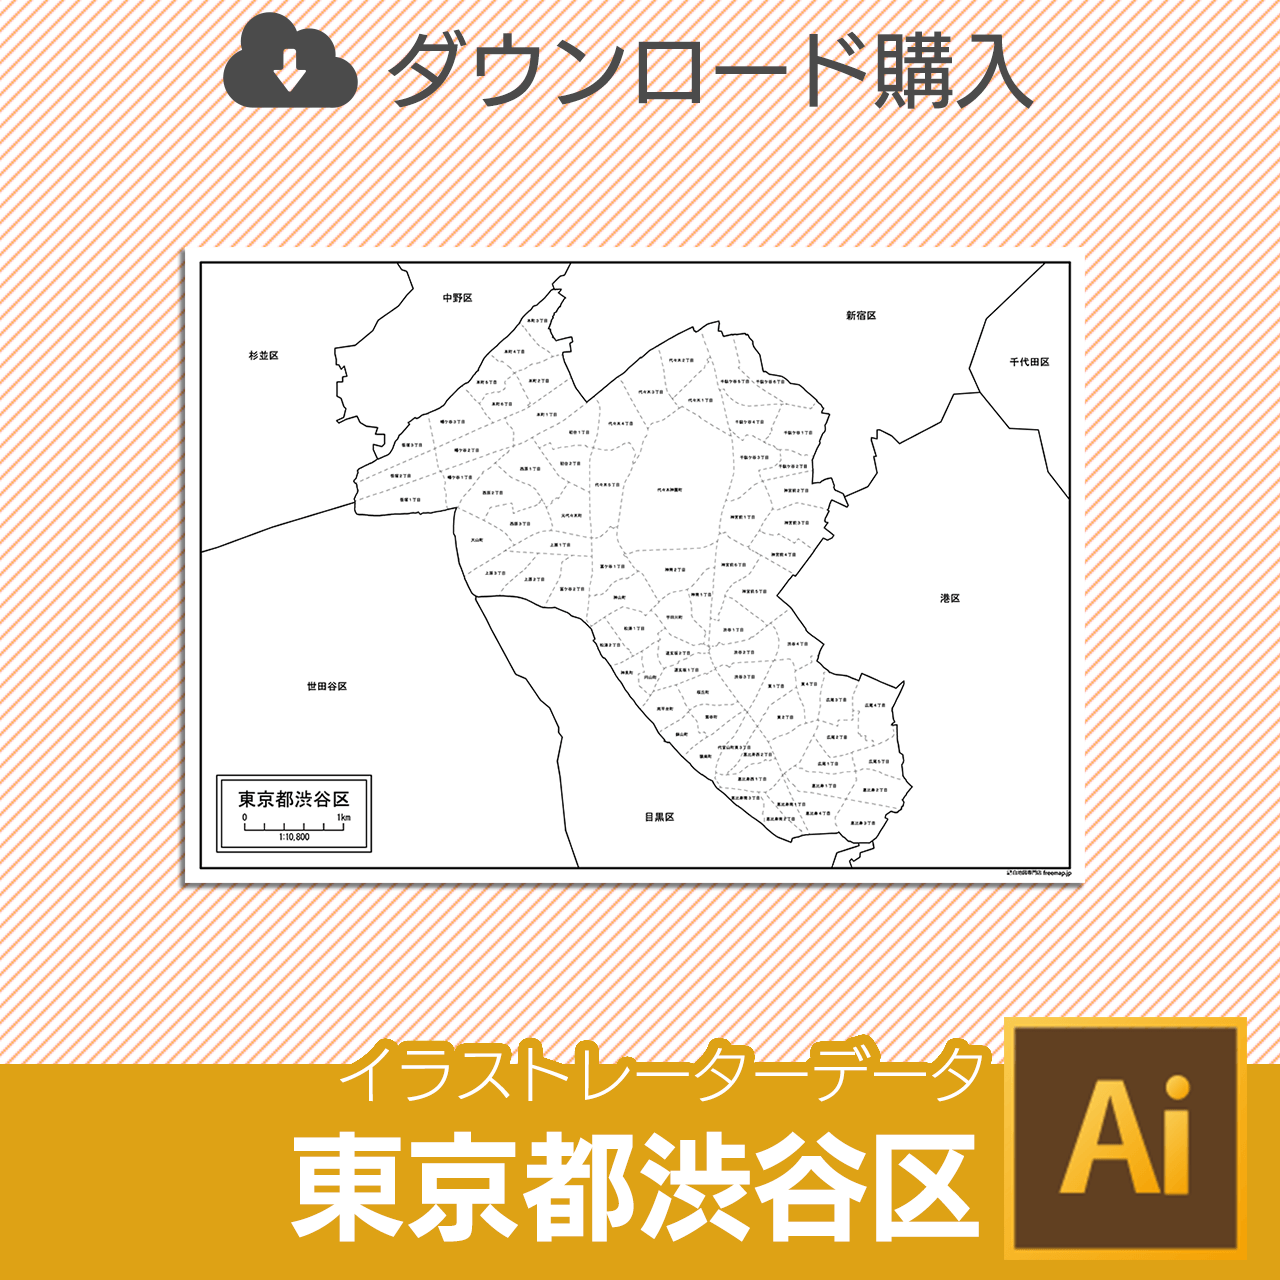 渋谷区の白地図のサムネイル画像